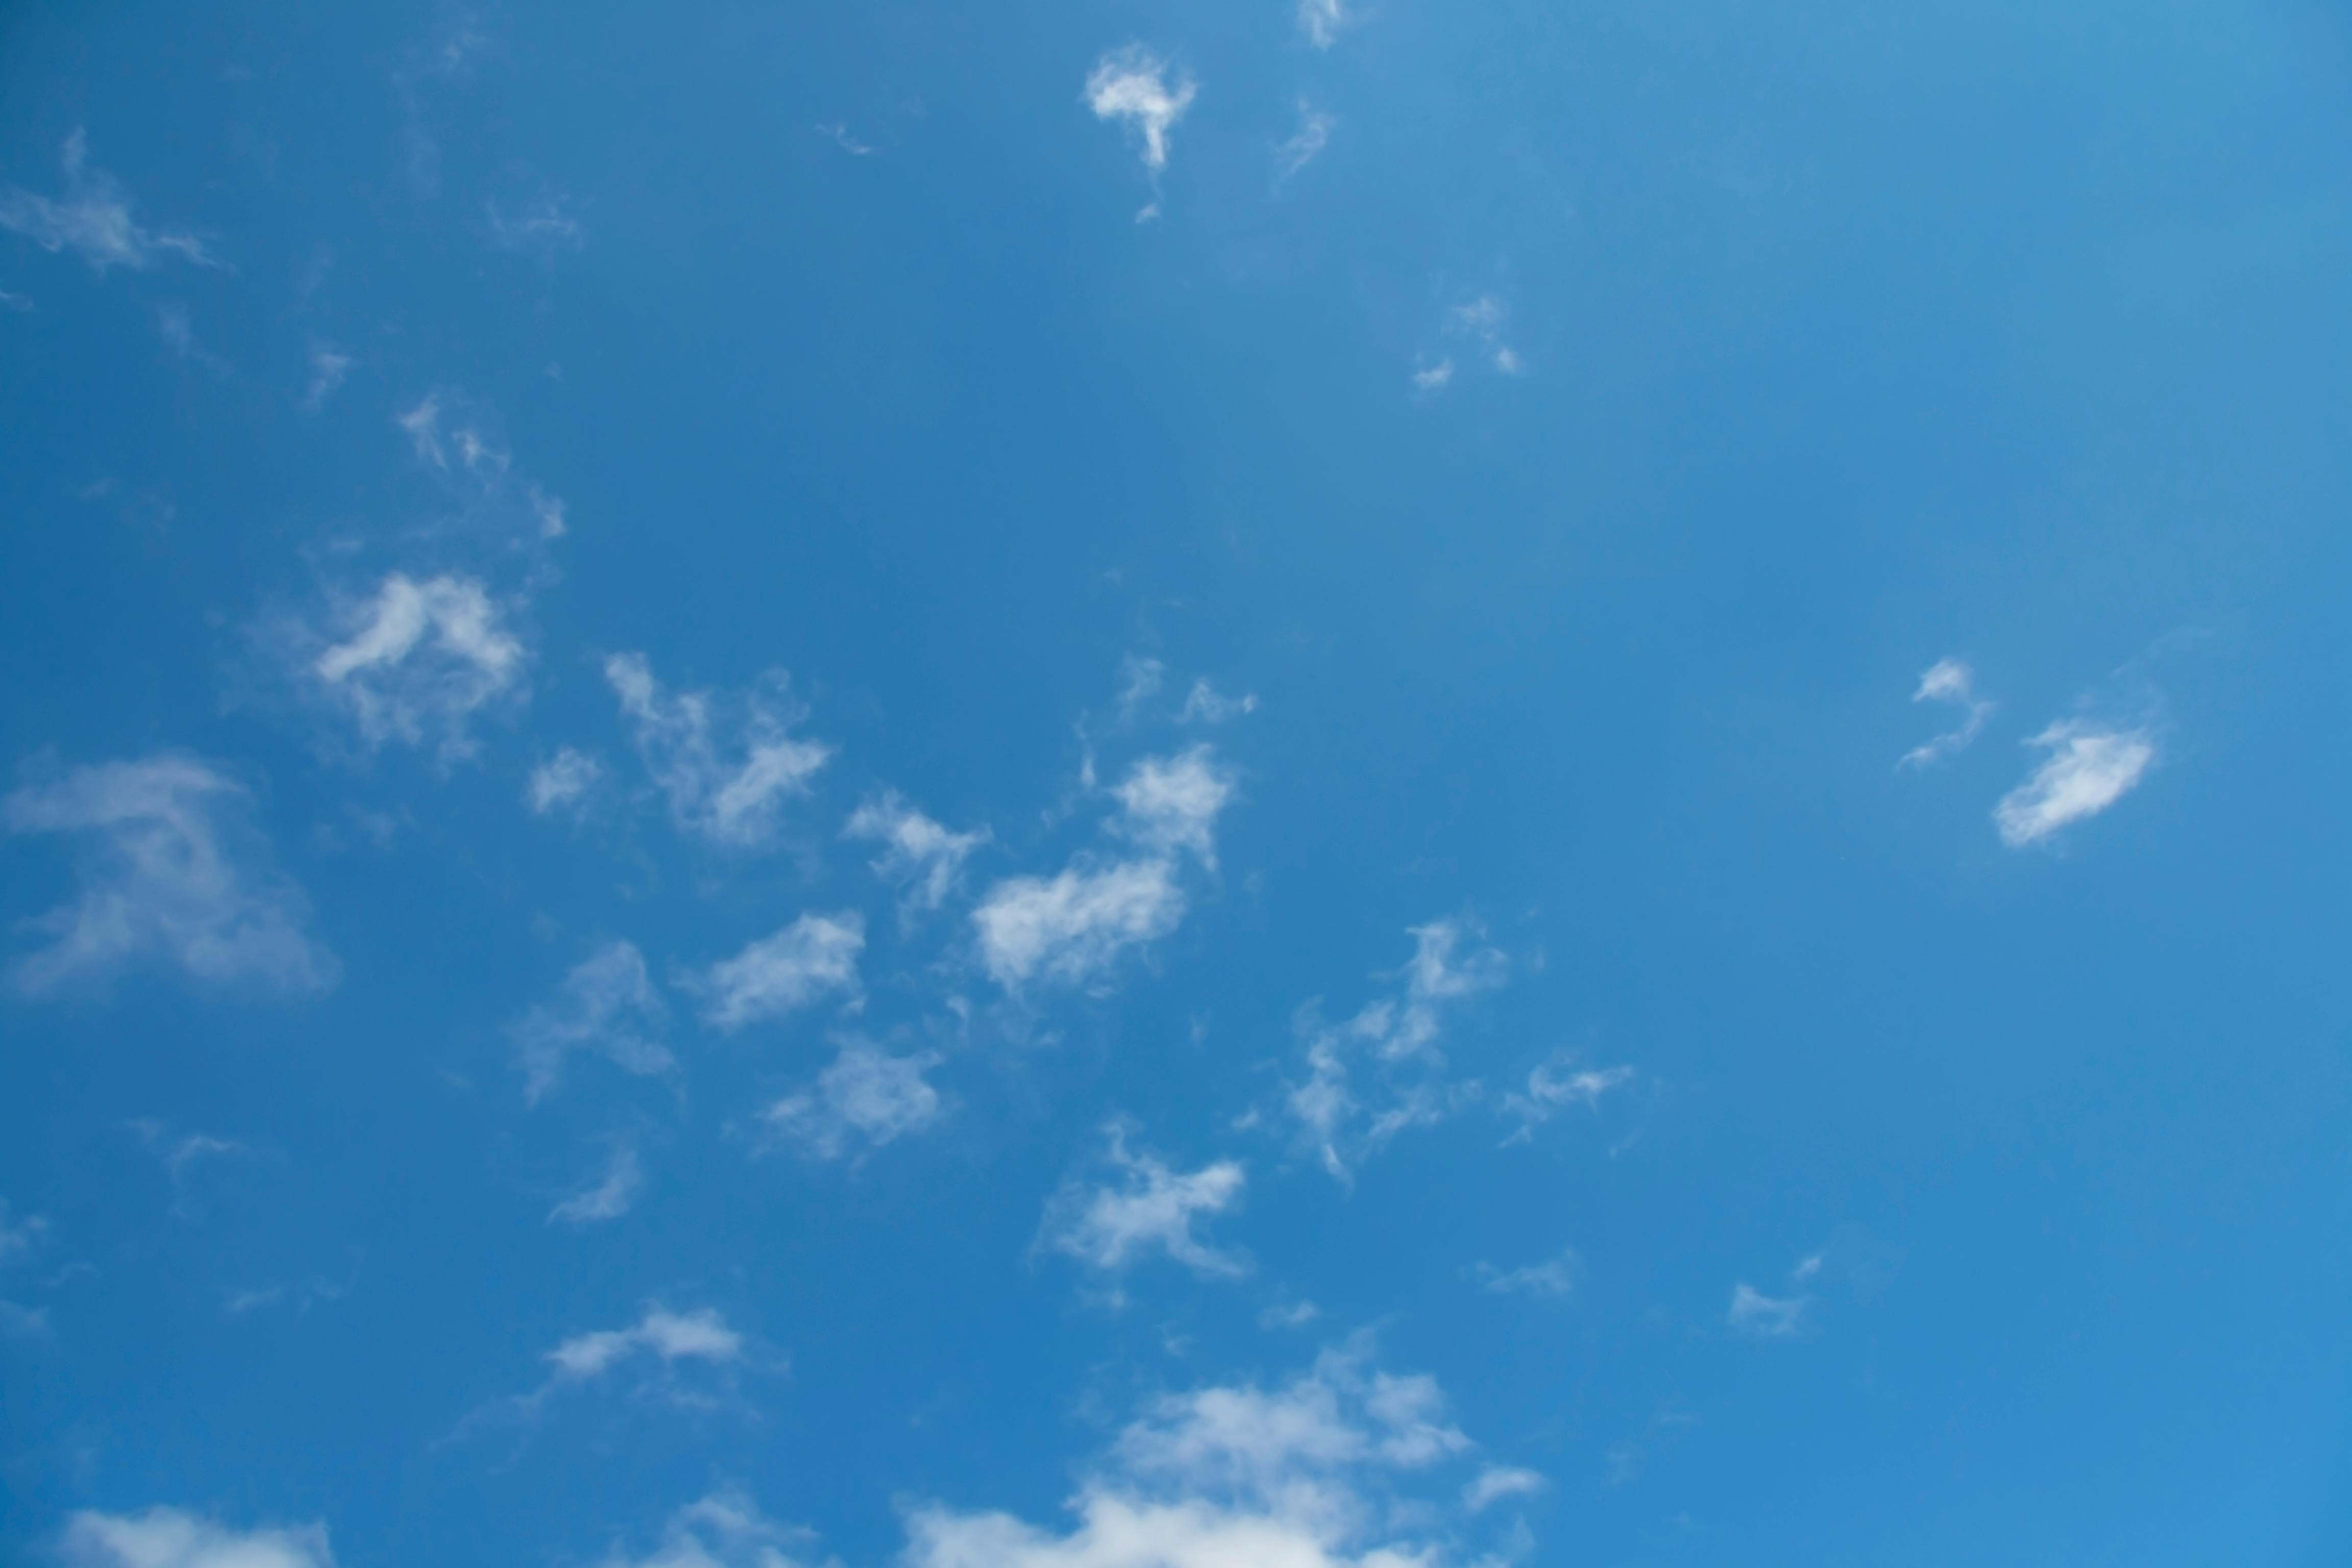 Bộ sưu tập ảnh miễn phí về bầu trời xanh này sẽ đưa bạn đến với thế giới rộng lớn của bầu trời trong xanh. Với chất lượng ảnh cao, sẽ không có gì thú vị hơn khi tải về các bức ảnh này để trang trí cho điện thoại hoặc máy tính của bạn.